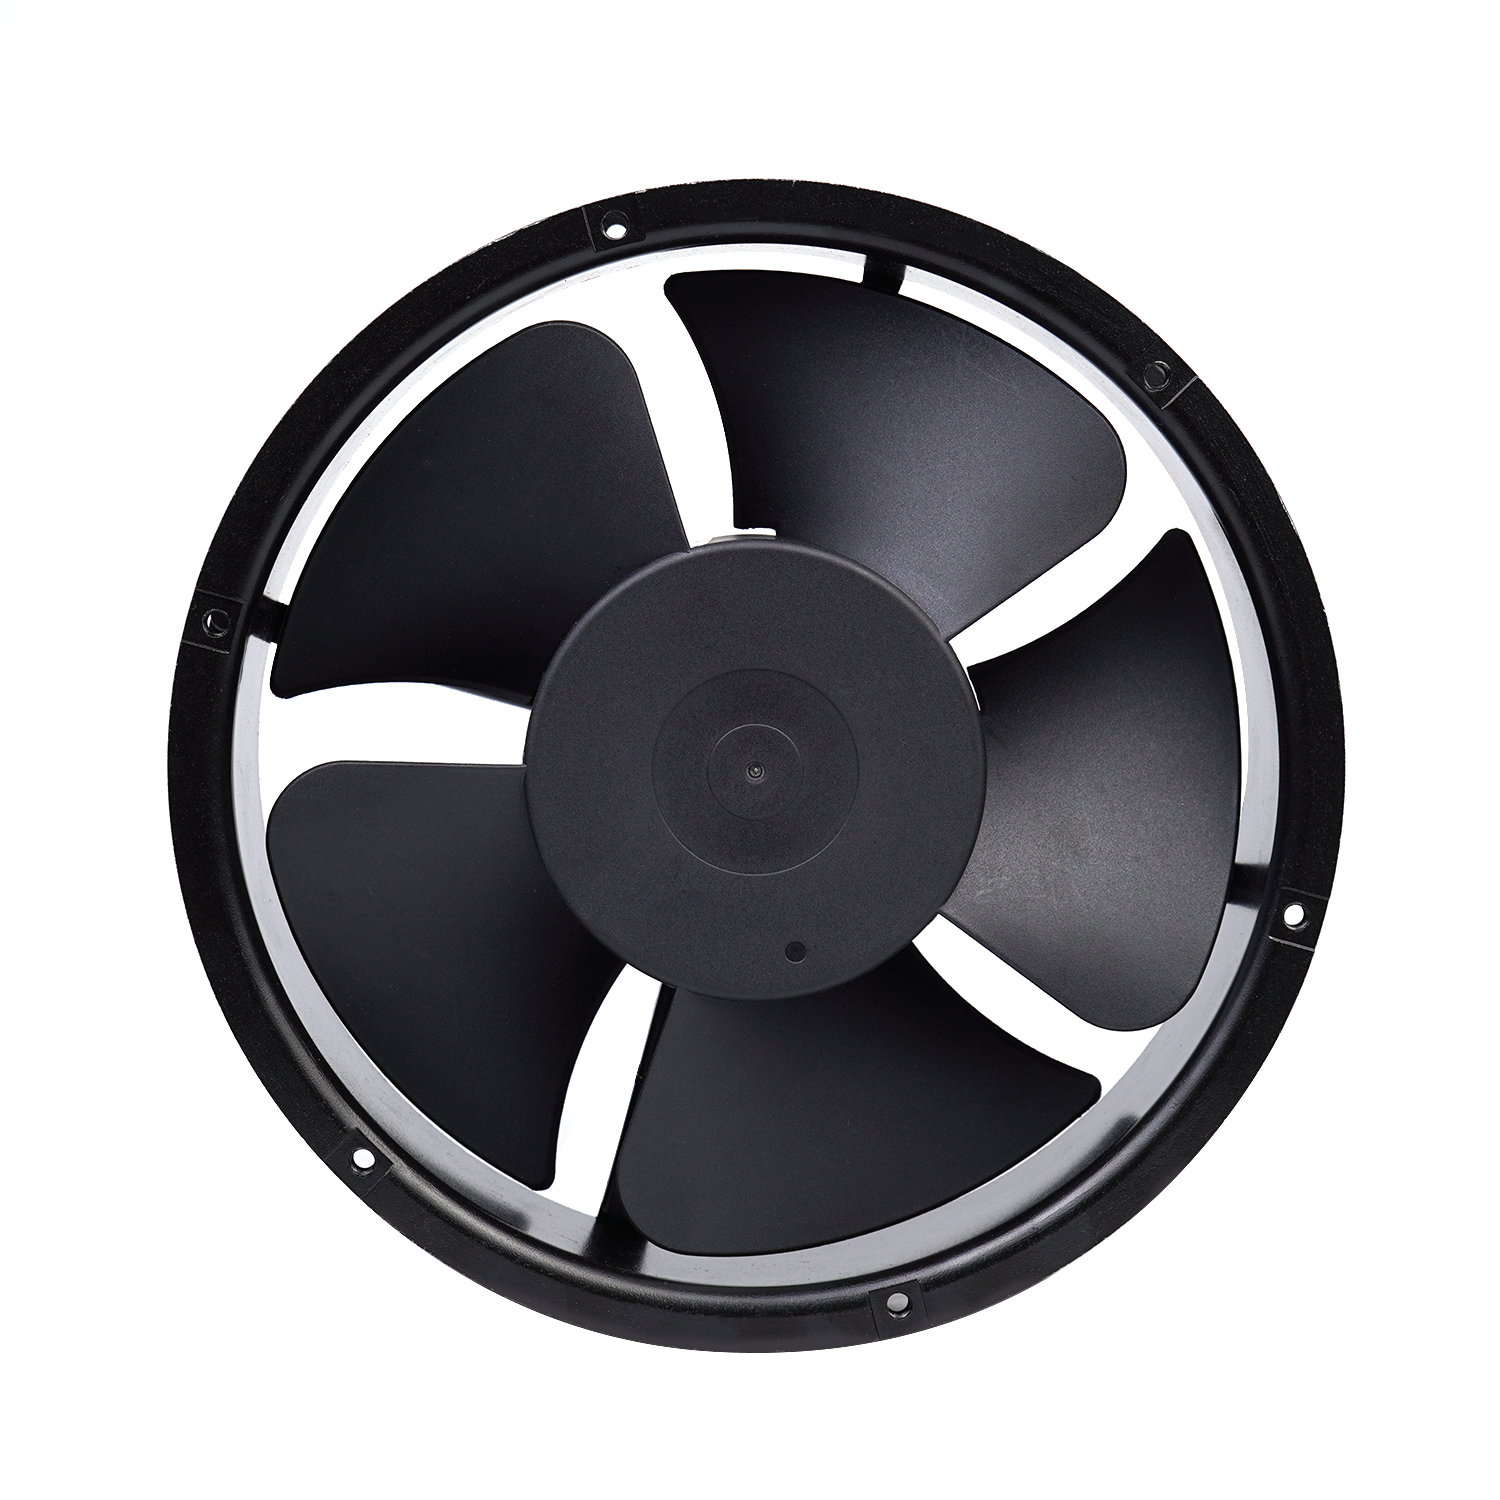 200x200x60 200mm 20060 industrial 240v ac axial fan